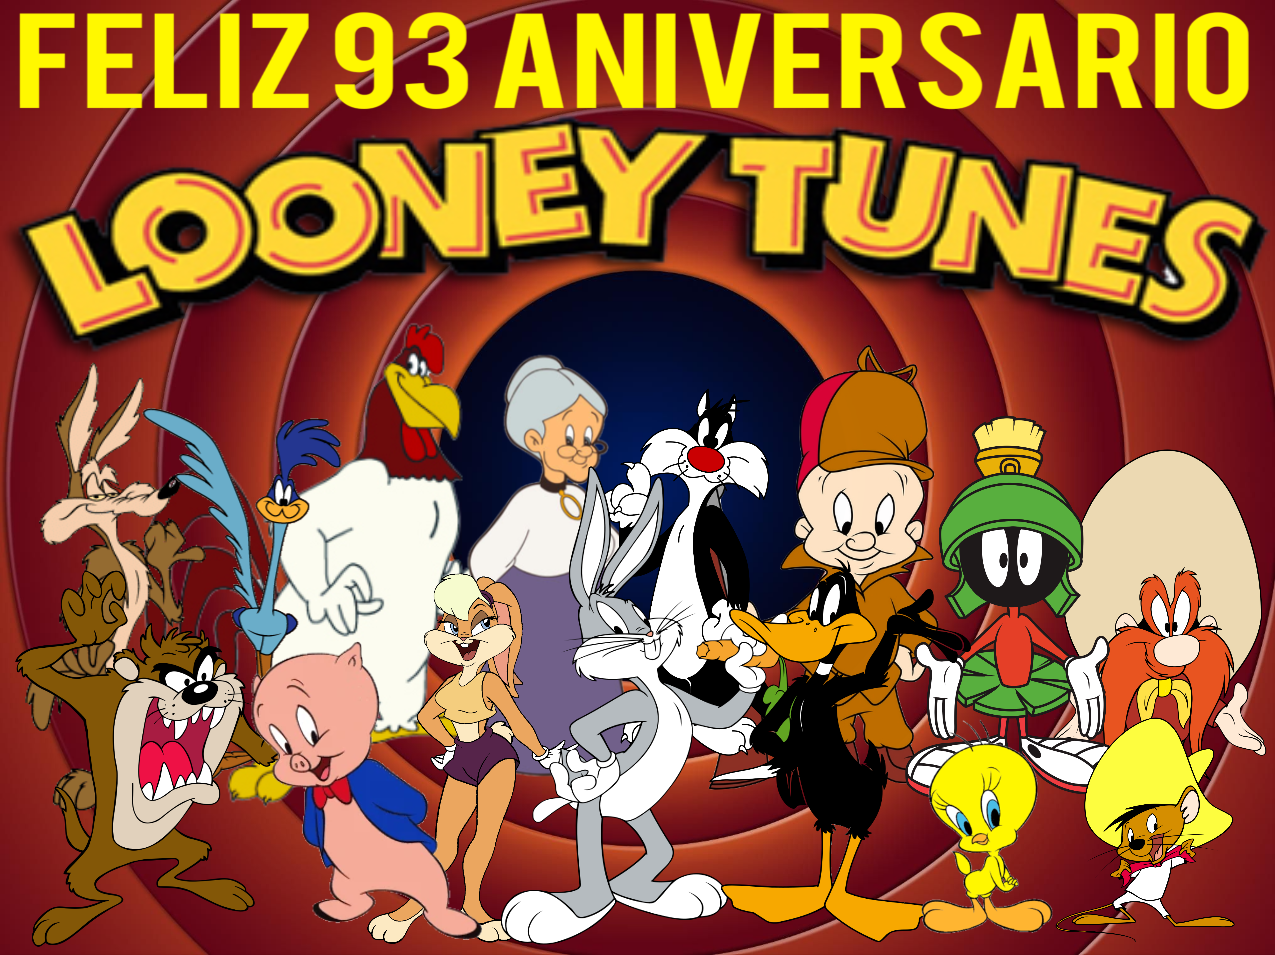 Feliz 93 Aniversario Looney Tunes ( 2023 ) by Luissandoval2002 on DeviantArt